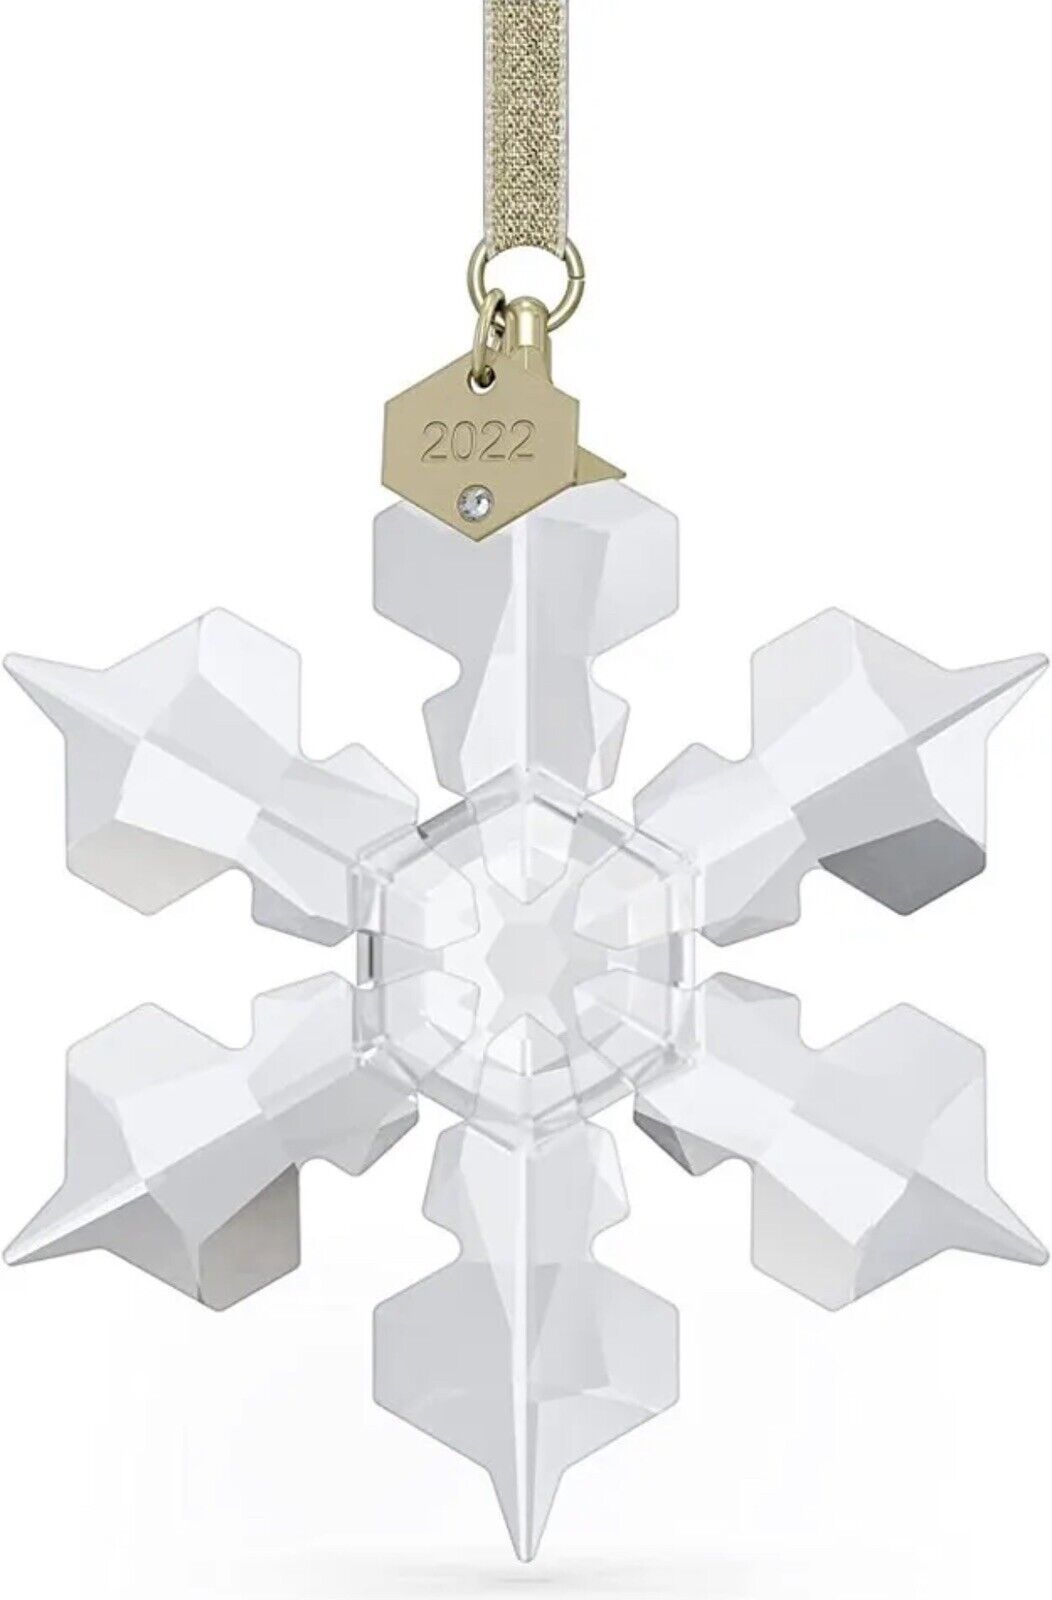 Swarovski Annual Edition 2022 Ornament